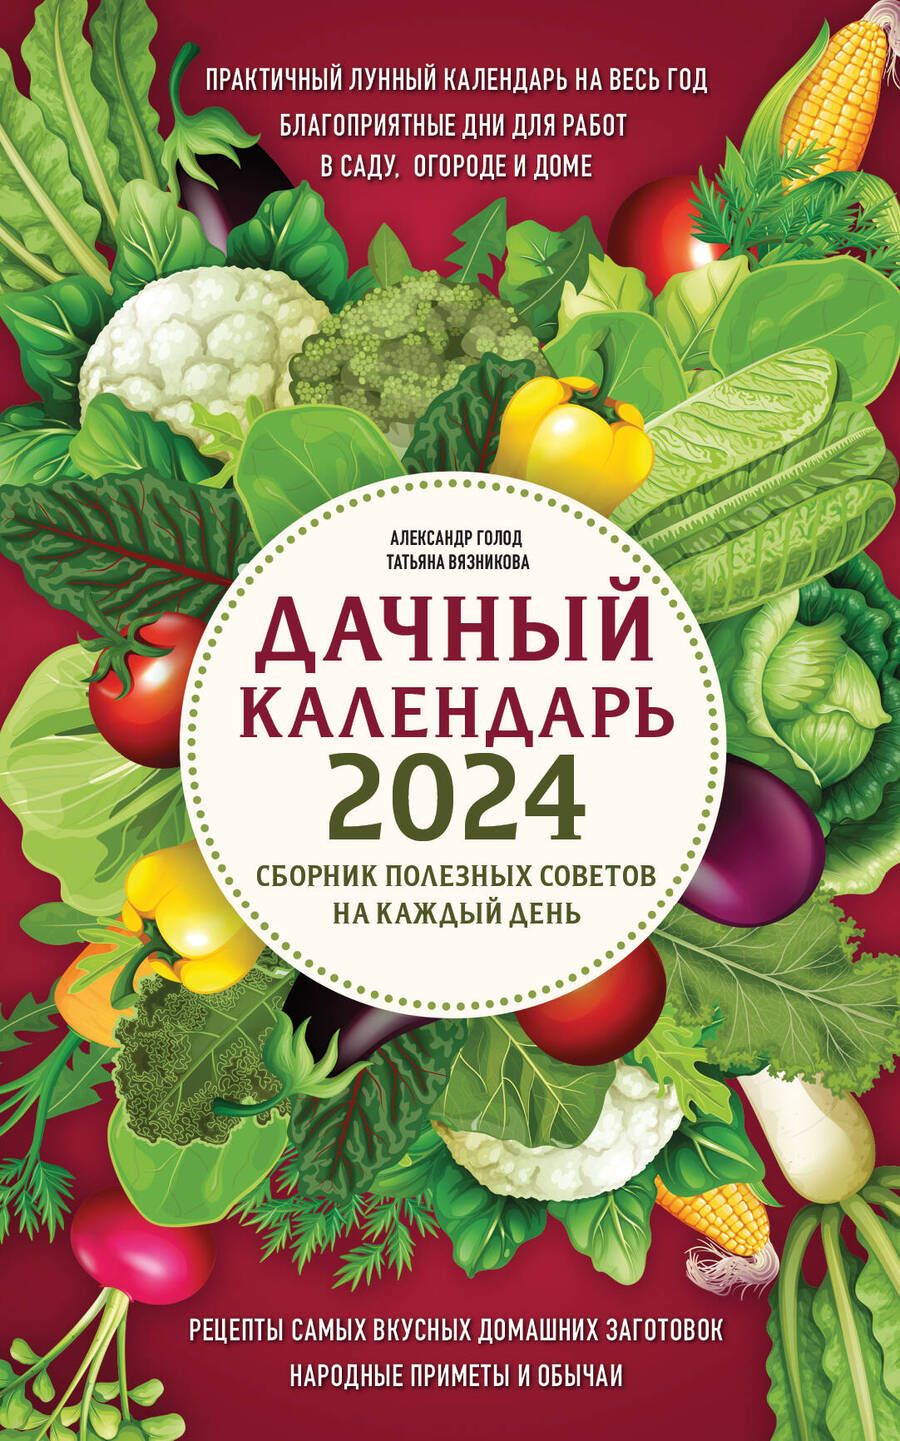 Обложка книги "Голод, Вязникова: Дачный календарь 2024. Сборник полезных советов на каждый день"